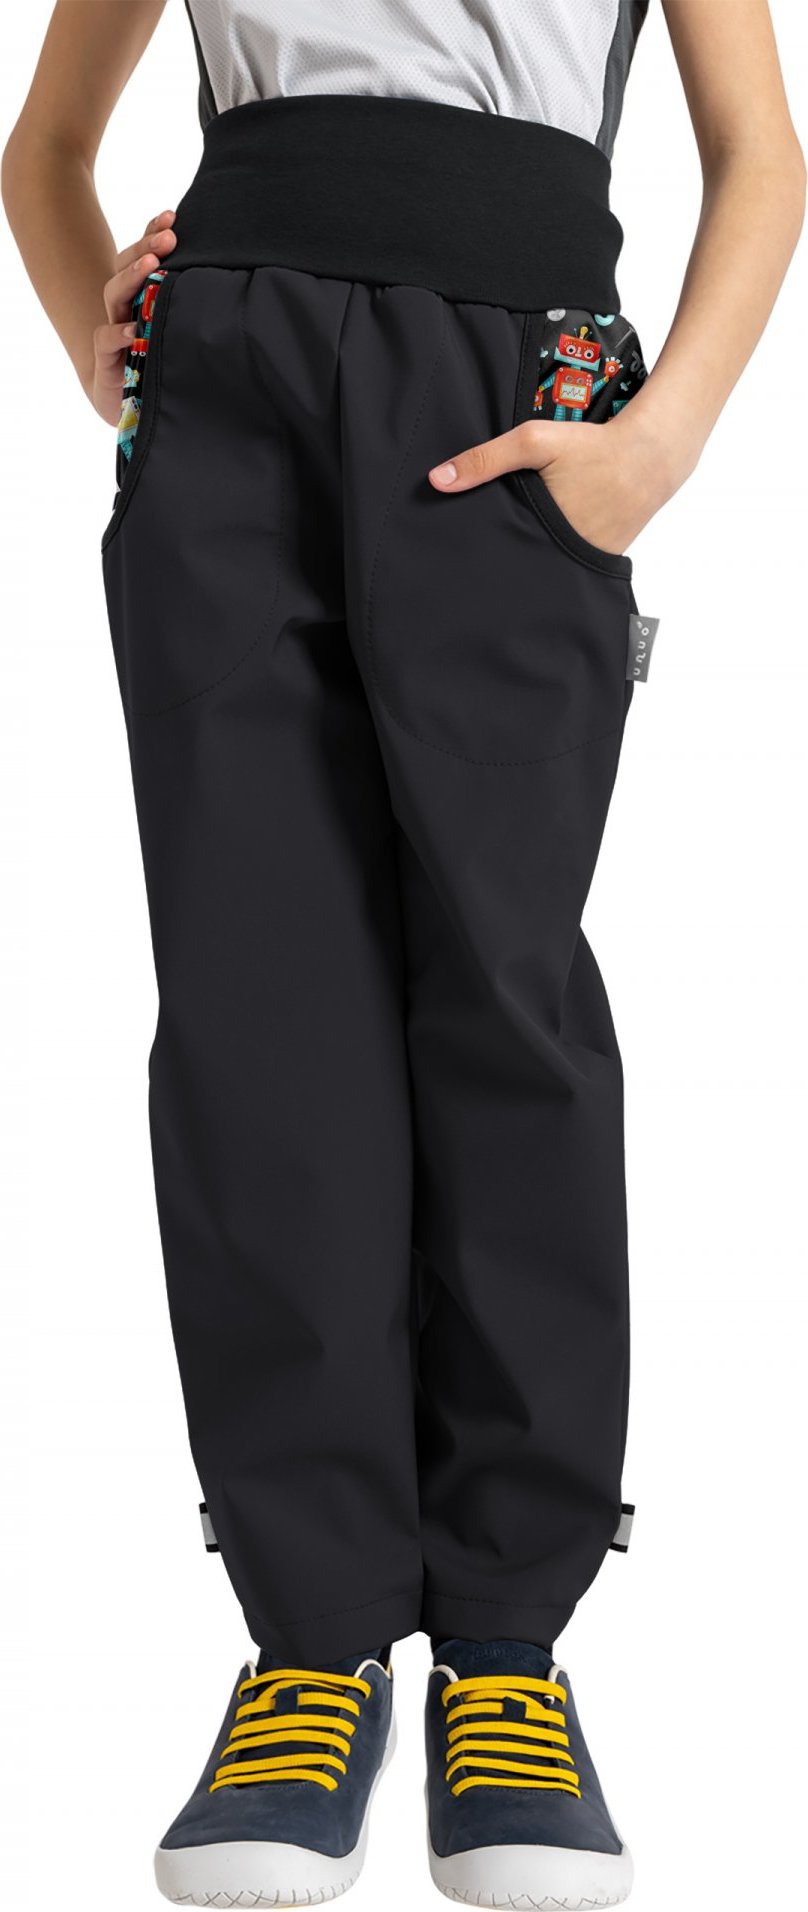 Dětské softshellové kalhoty UNUO Basic s fleecem, černé, Roboti Velikost: 128/134